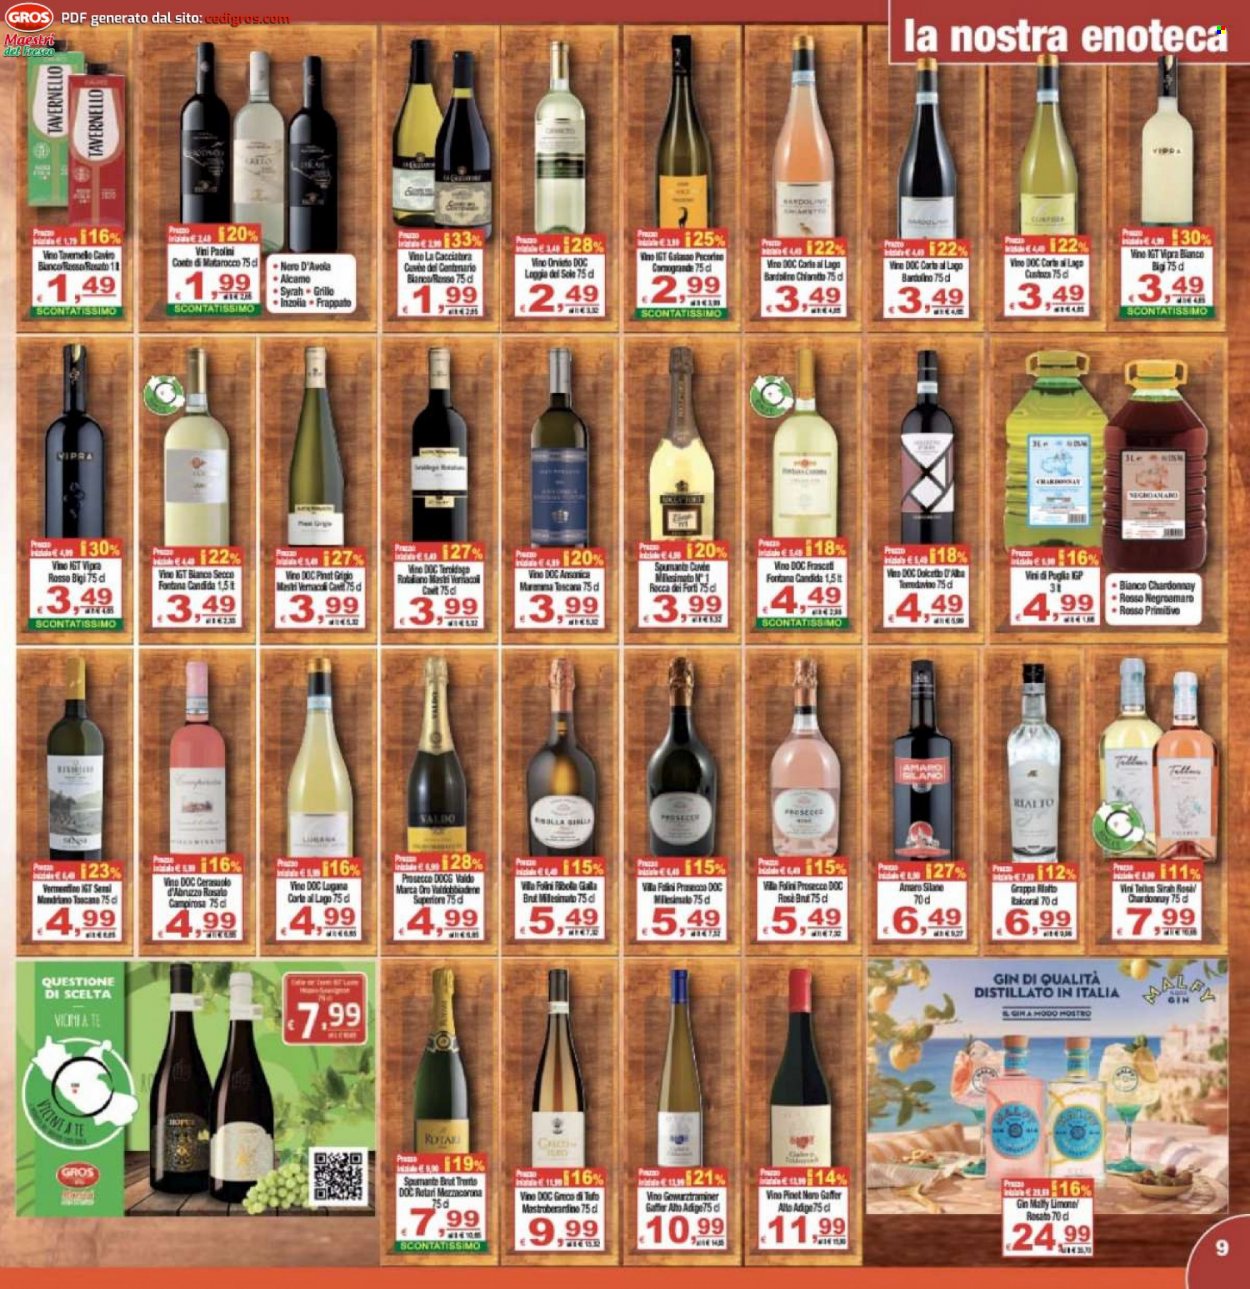 thumbnail - Volantino CTS supermercati - 29/6/2022 - 7/7/2022 - Prodotti in offerta - vino bianco, Valdobbiadene, Spumante, Tavernello, Chardonnay, Inzolia, Negroamaro, Nero d'Avola, Prosecco, vino, Vermentino, Pinot Grigio, Bardolino, Cerasuolo, gin, grappa. Pagina 9.